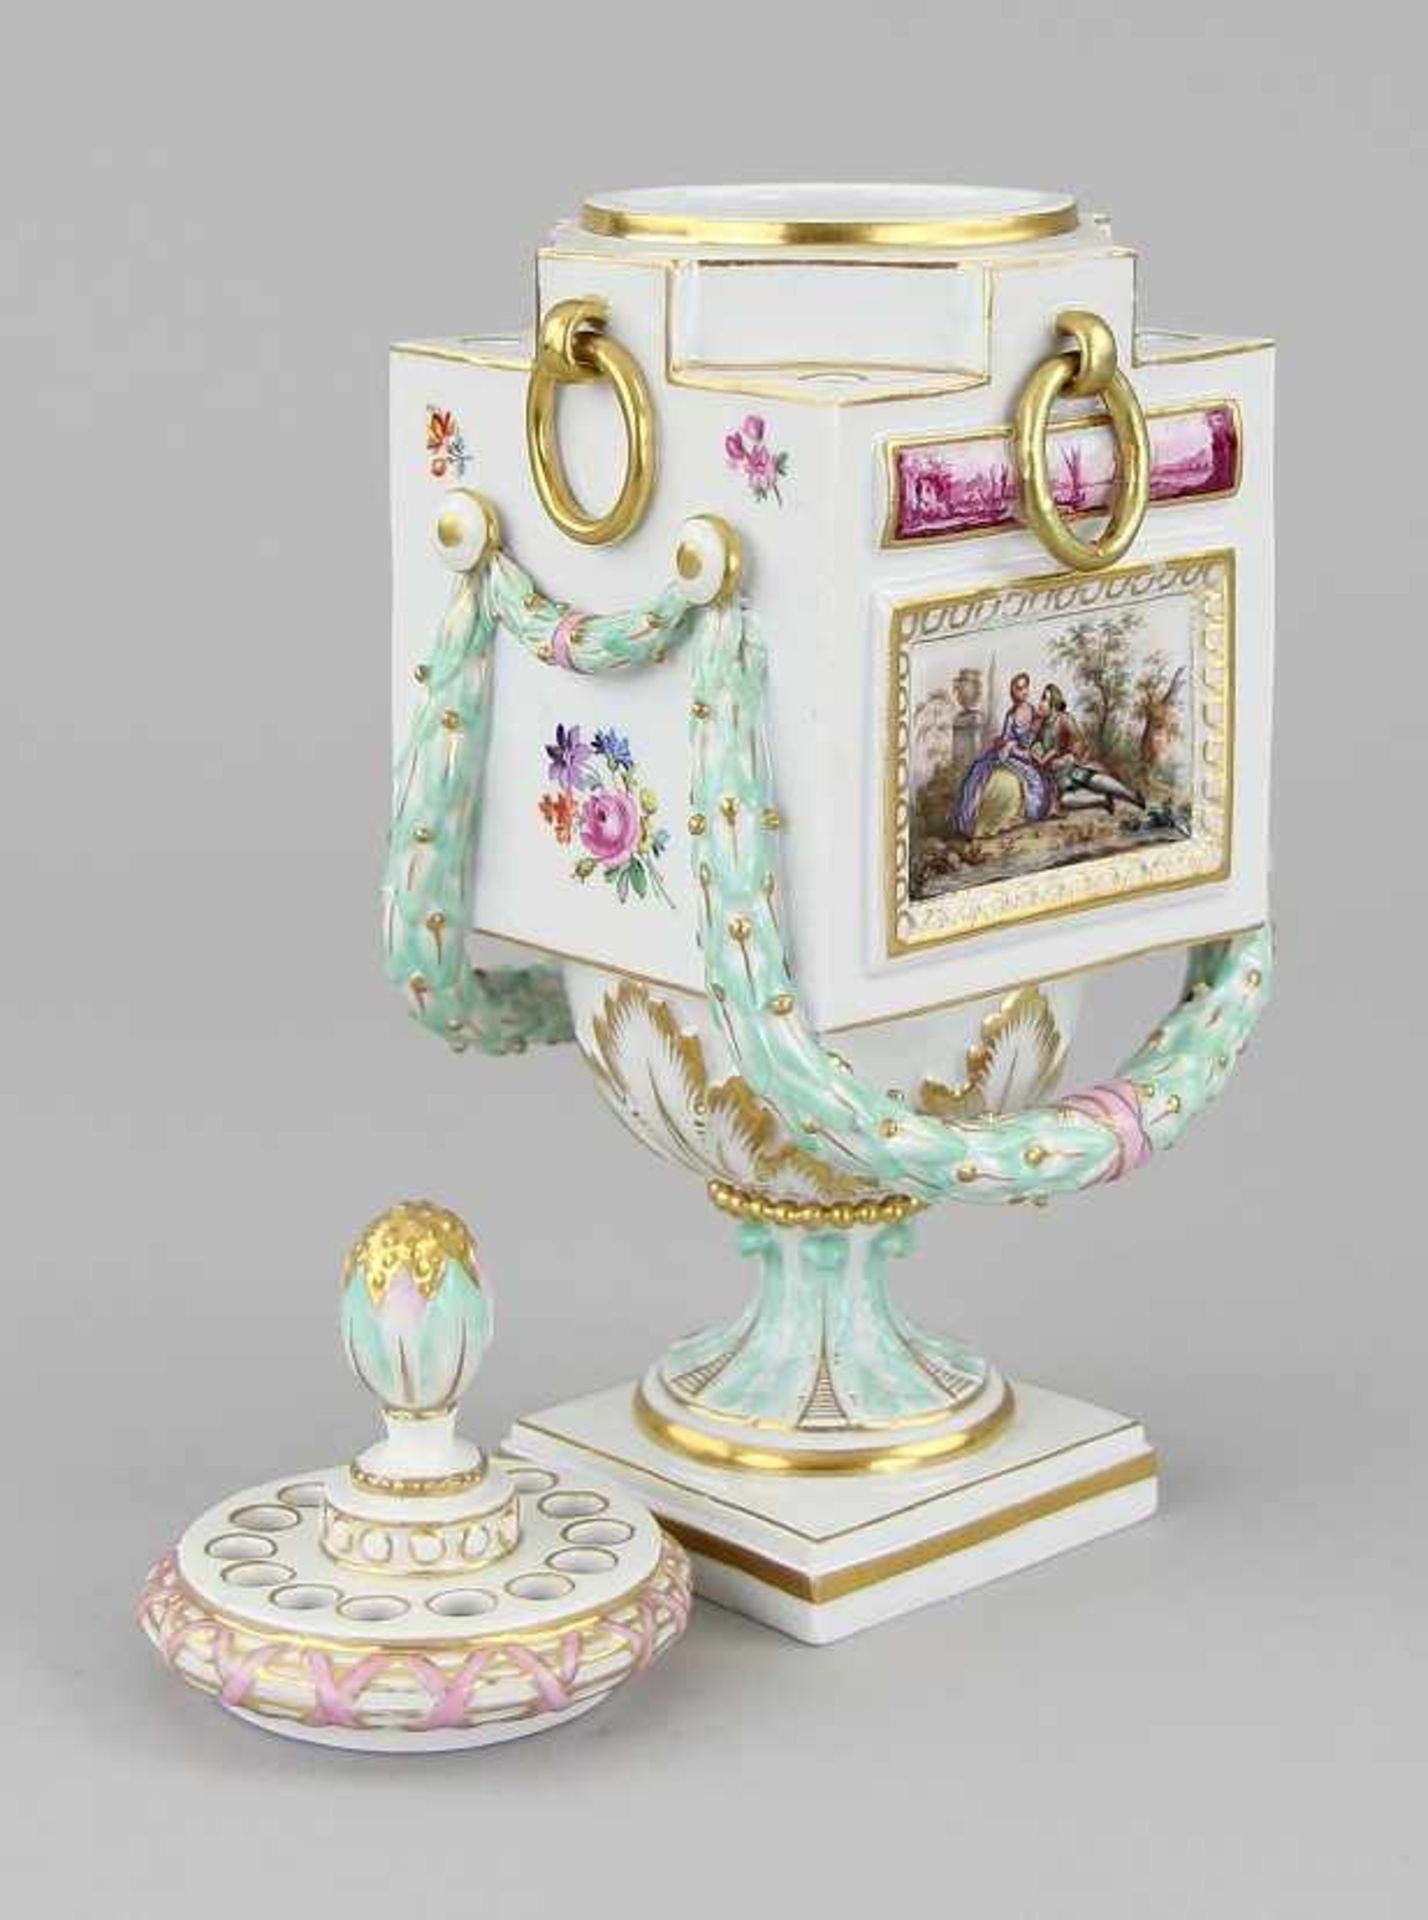 Seltene Meissen - Potpourri - Vase Porzellan Porzellan farbig bemalt und vergoldet, reichverzierte - Image 6 of 8